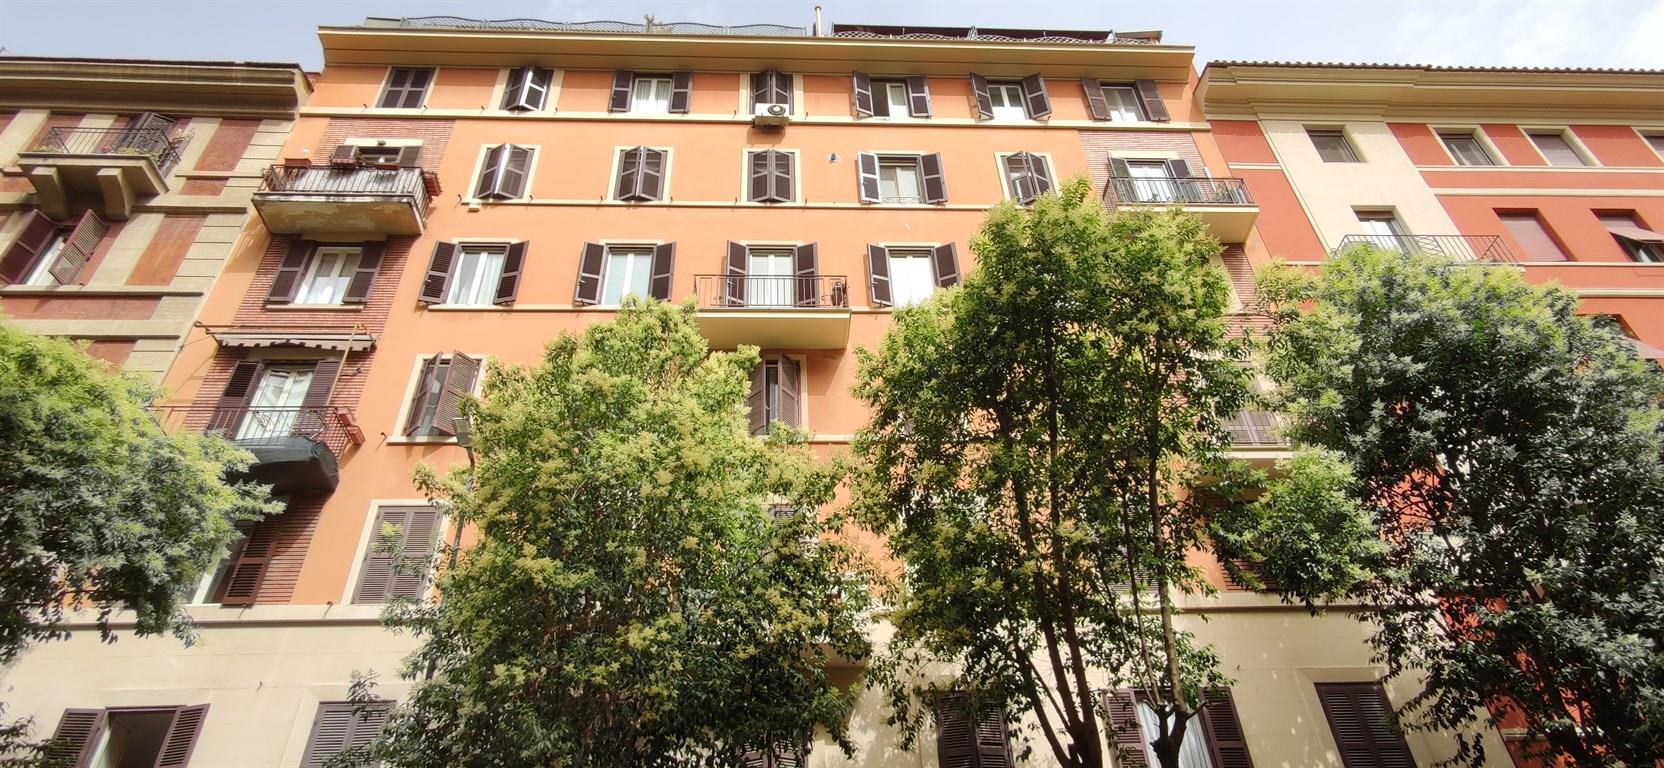 Appartamento al quarto piano in zona Piazzale Clodio